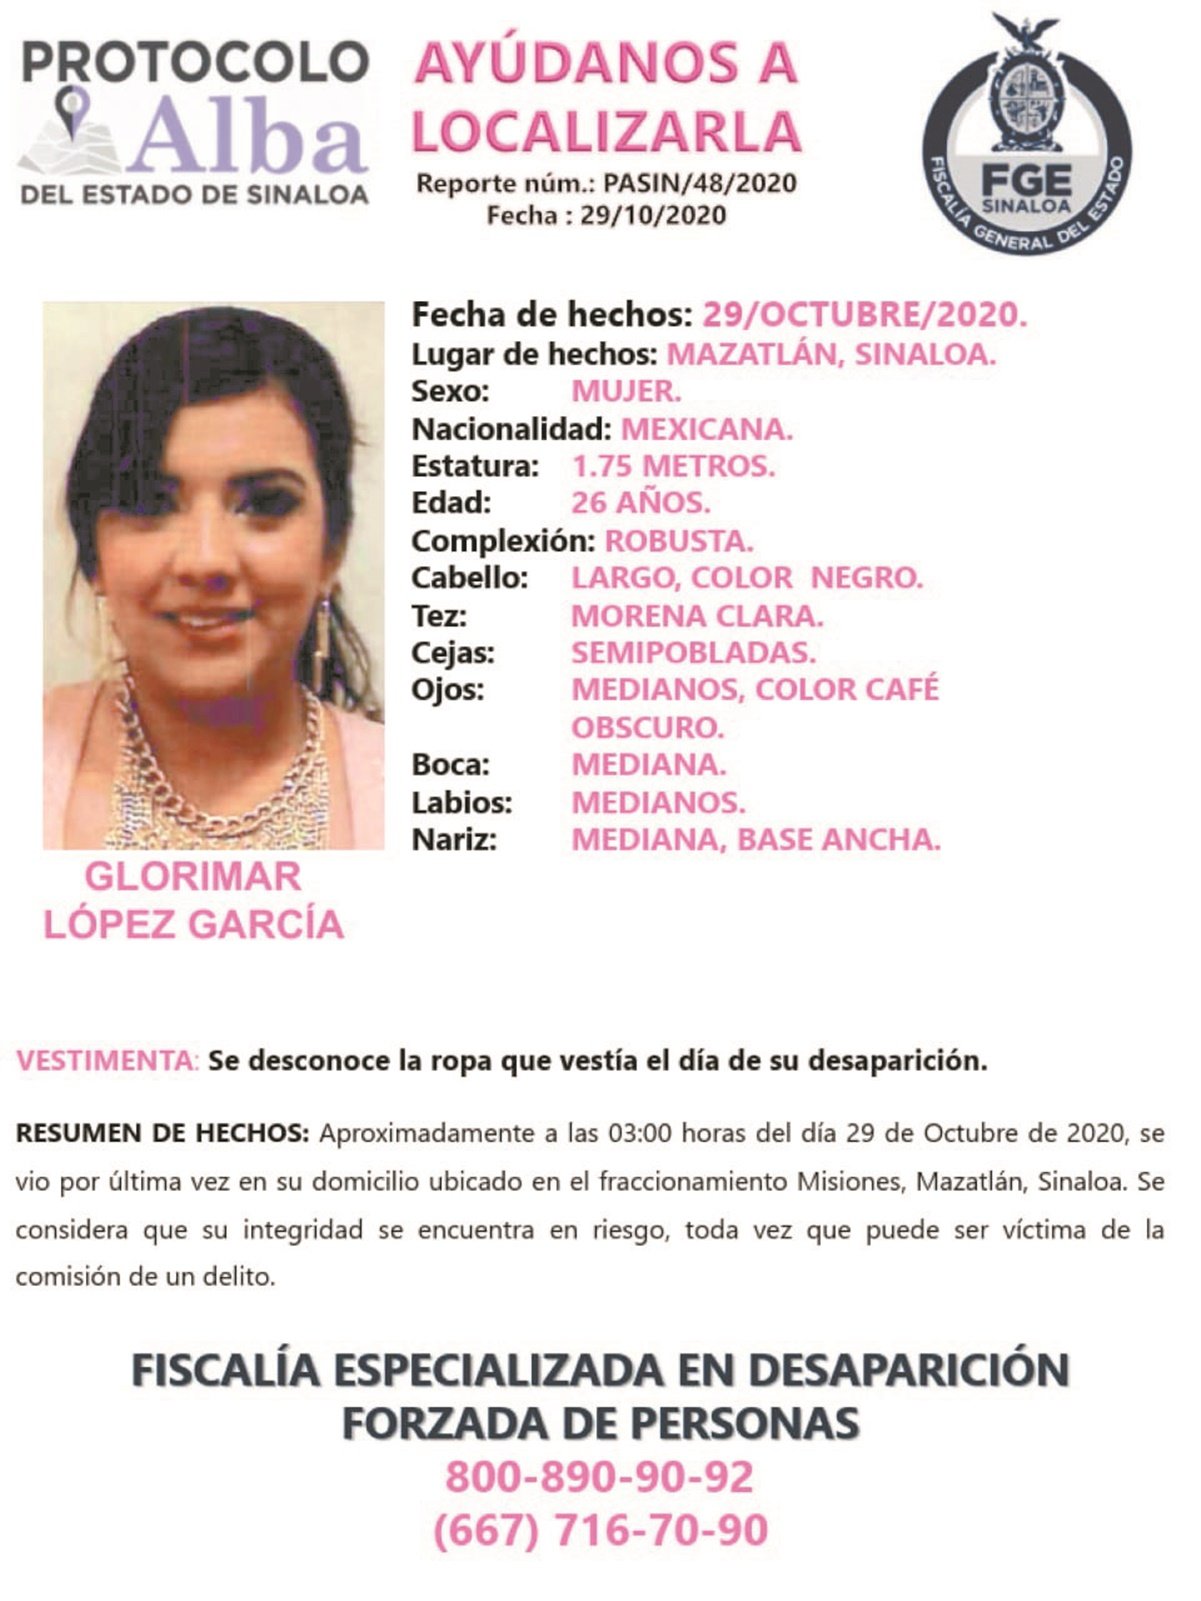 Exigen la localización de Glorimar, enfermera secuestrada en Sinaloa